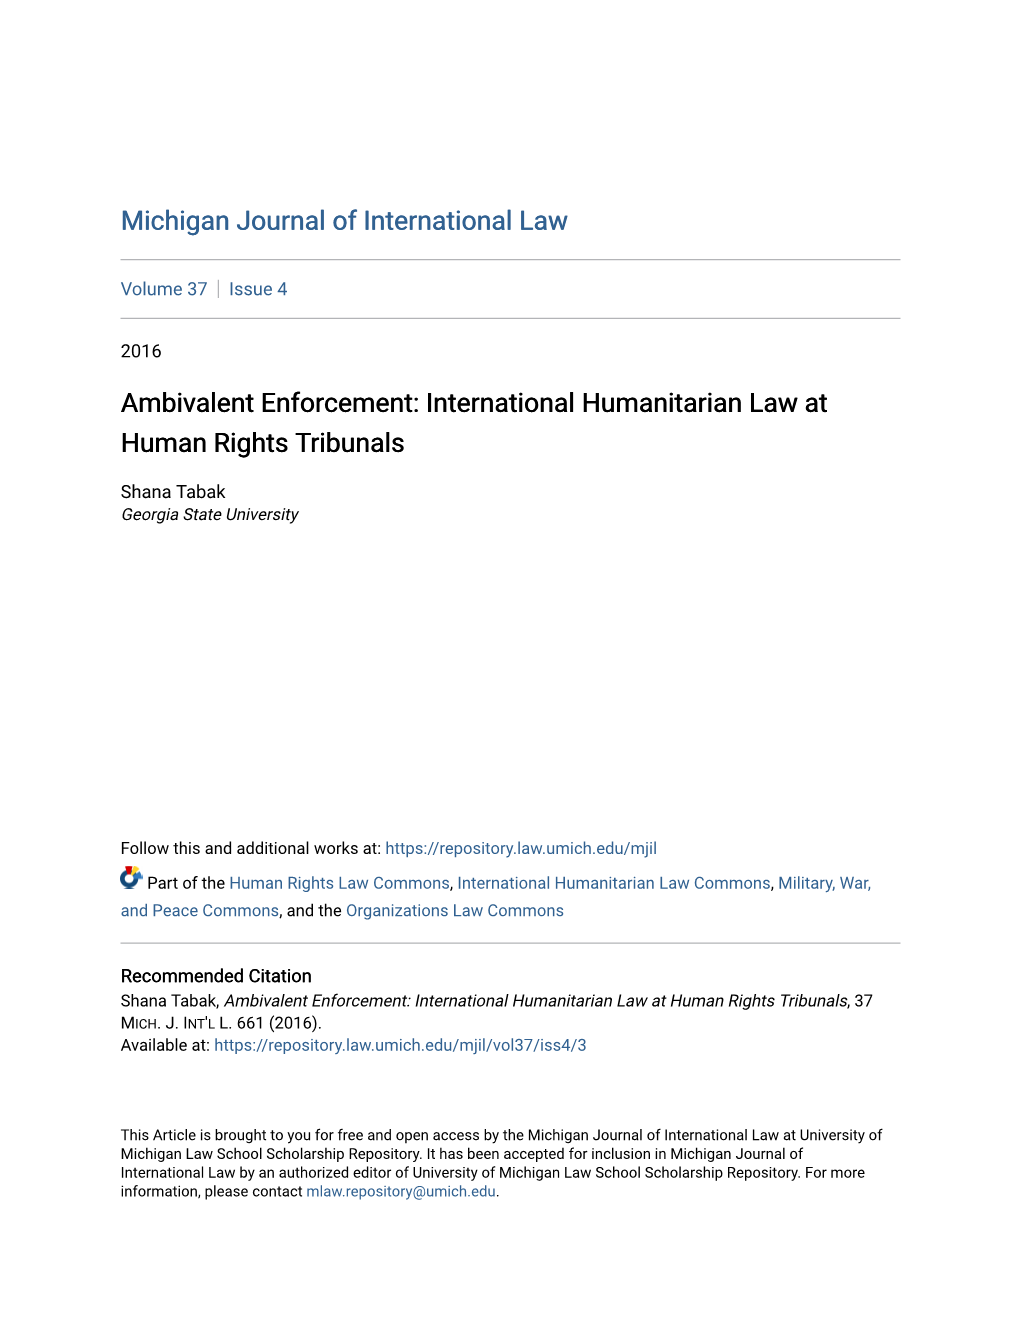 International Humanitarian Law at Human Rights Tribunals